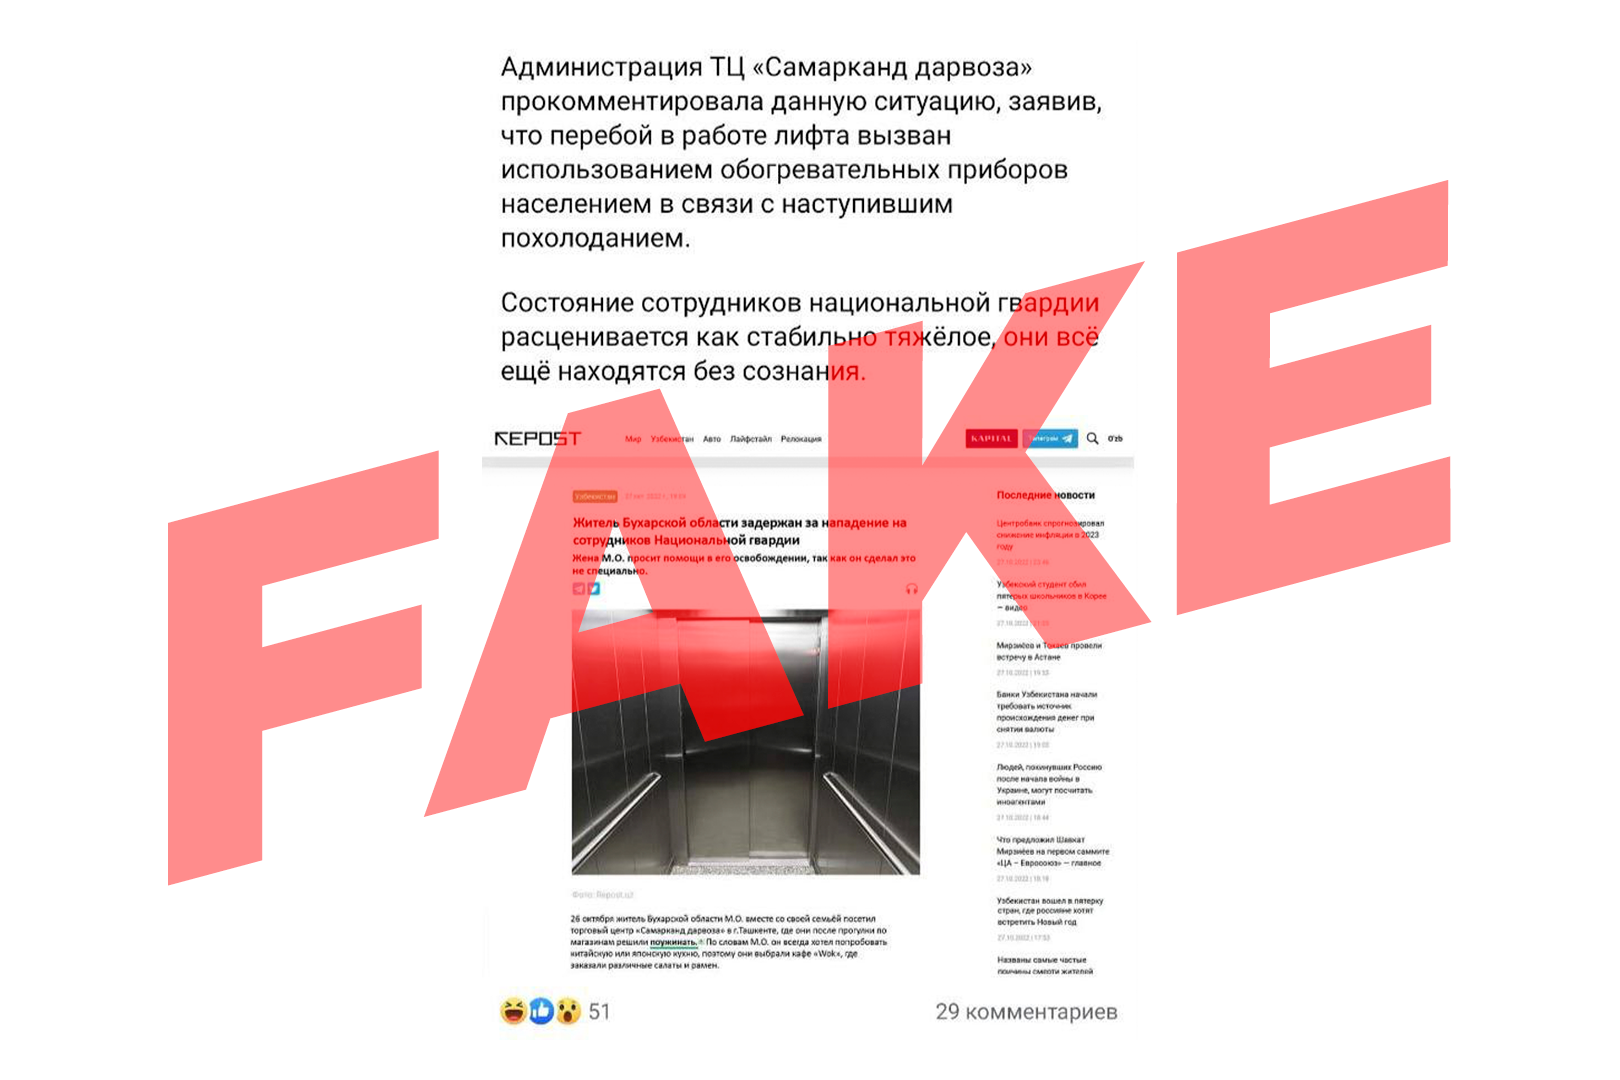 Repost.uz предупреждает о фейках, распространяемых от имени редакции